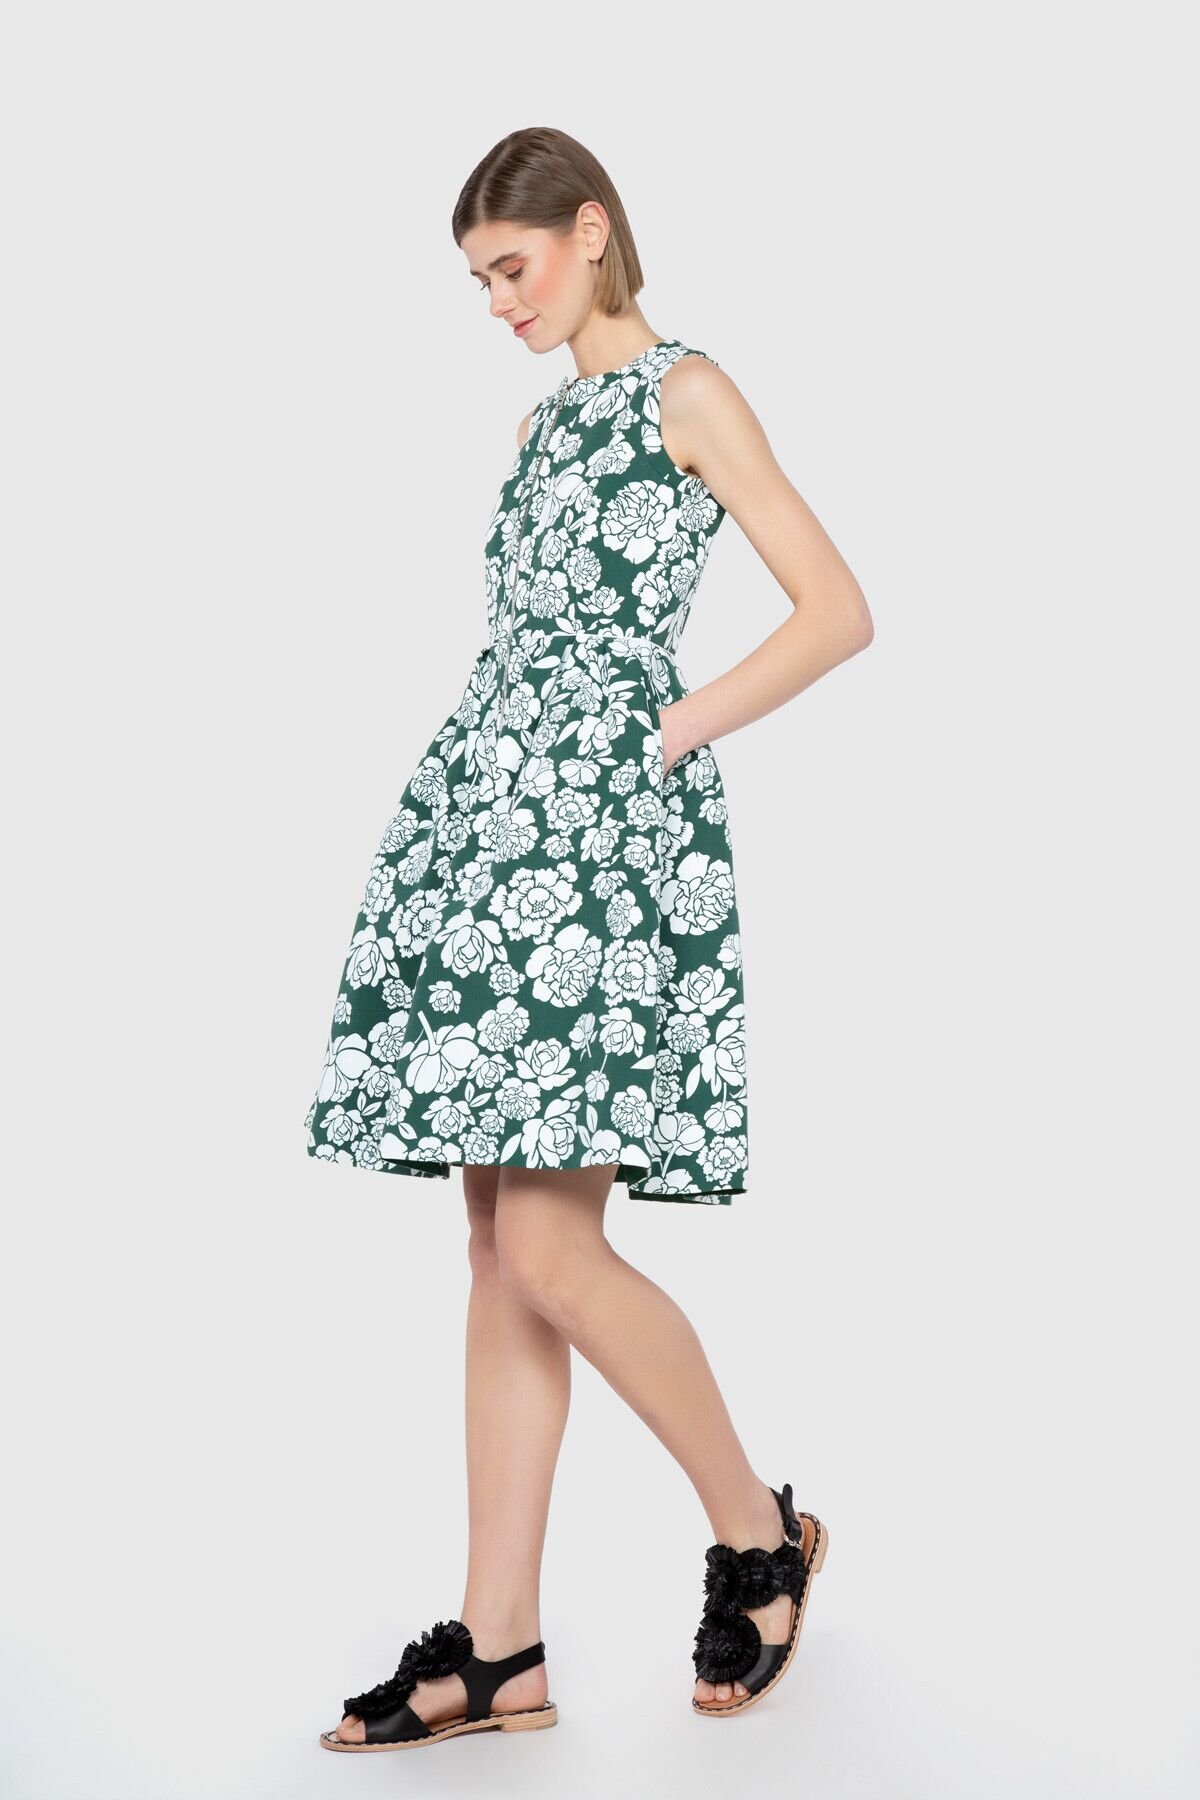 Dice Kayek Çiçek Desenli Hacimli Etek Form Diz Üstü Yeşil Tasarım Elbise